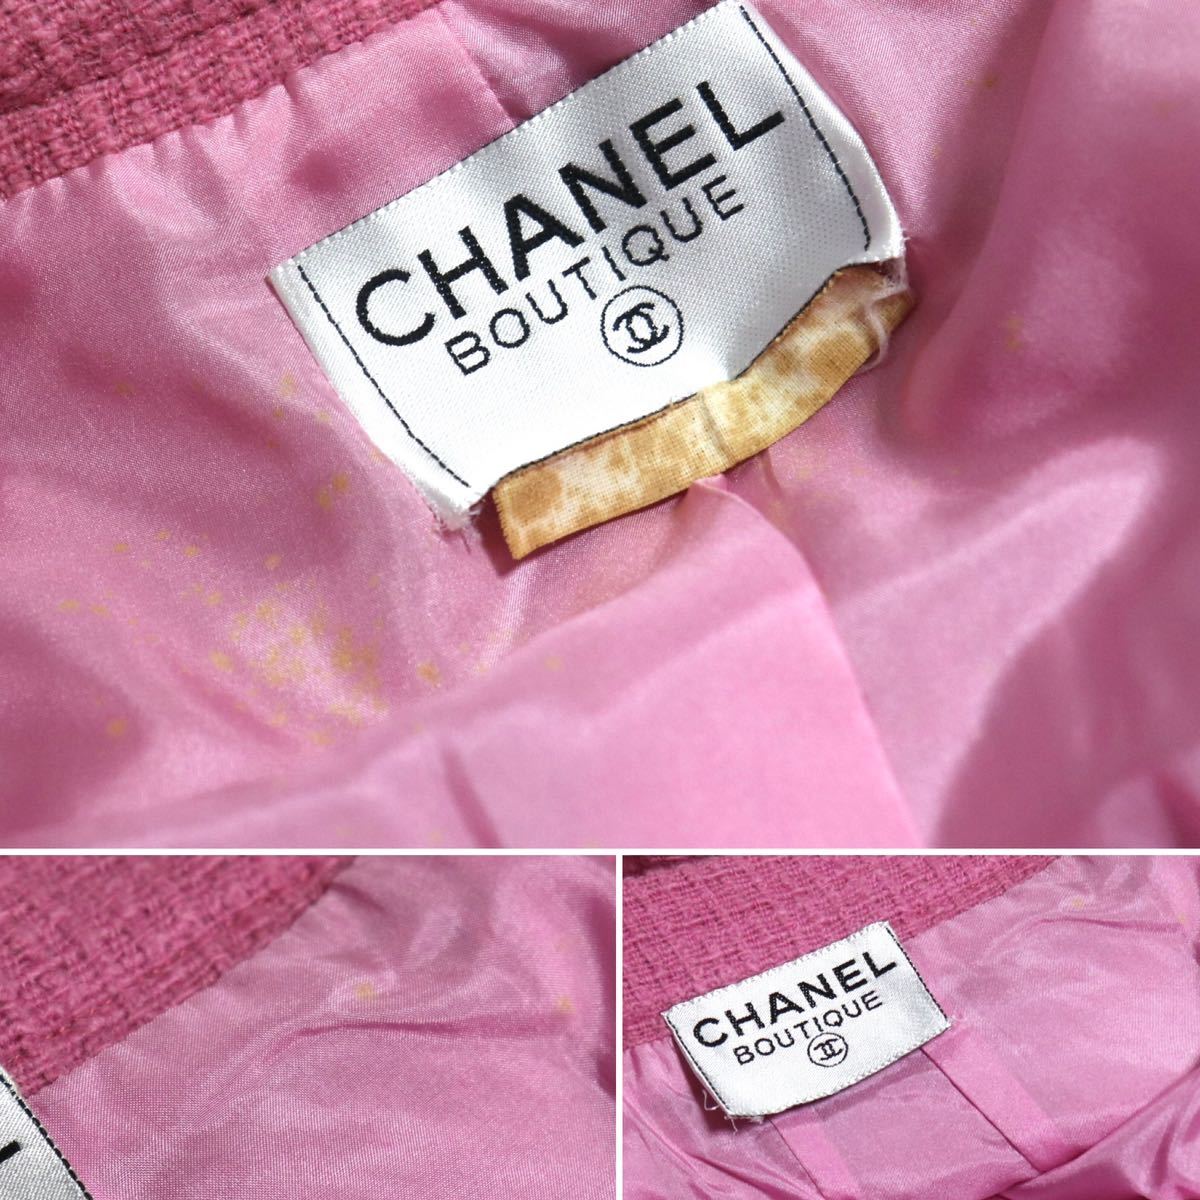  редкий [CHANEL Chanel ]BOUTIQUE COCO золотая цепь / кнопка / двойной / no color / твид жакет выставить юбка /tweed